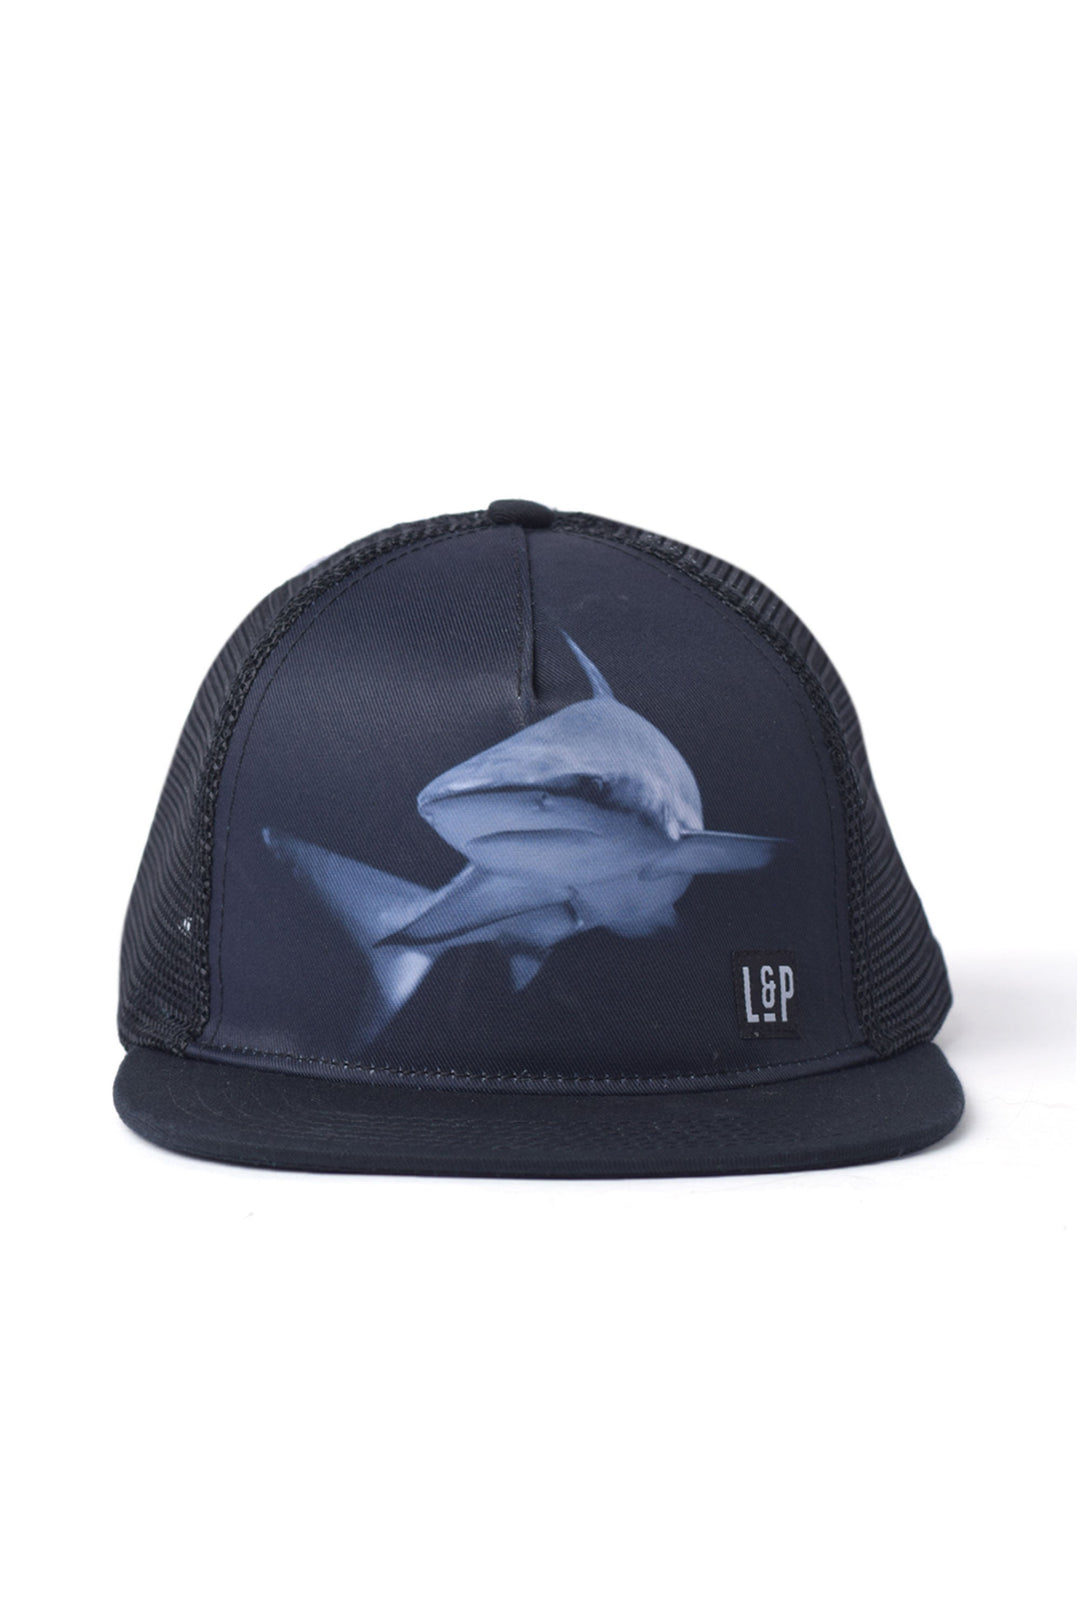 Shark series mesh cap - Fit Simplistic [Baby]